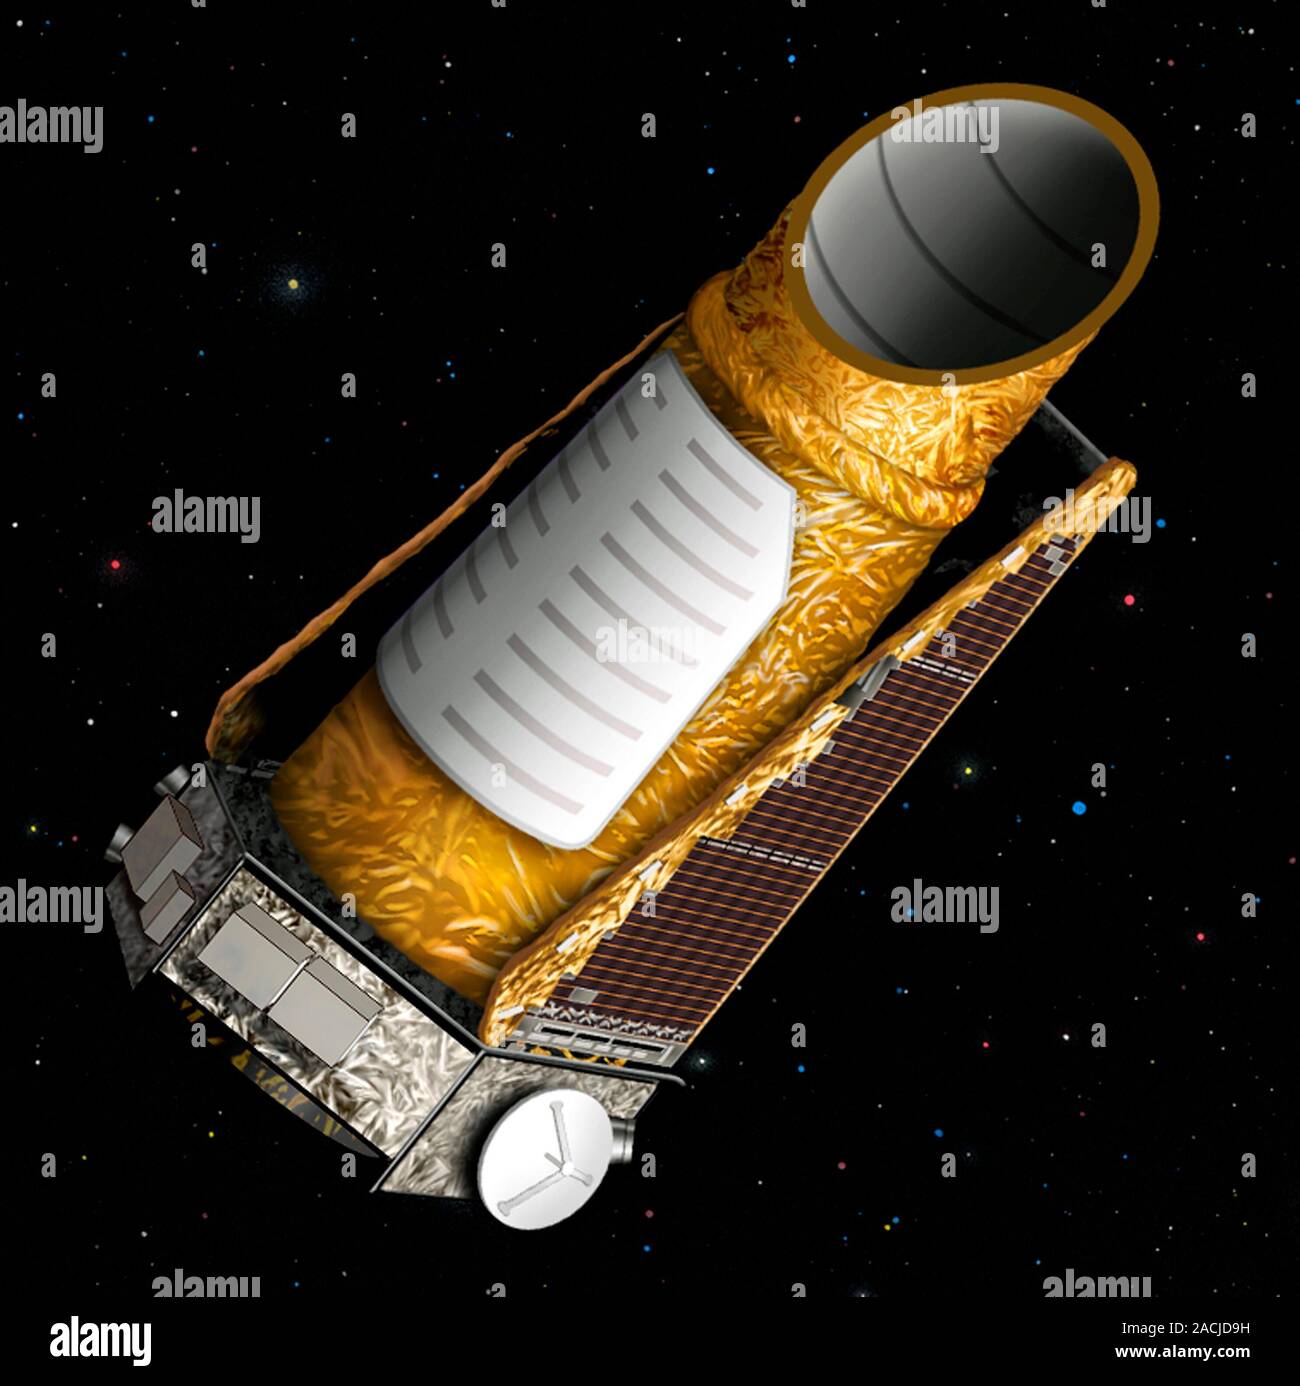 La misión del Telescopio espacial Kepler, obras de arte. Misión Kepler de  la NASA está diseñado para descubrir planetas tipo Tierra en órbita  alrededor de otras estrellas. 0,95 metros de Kepler di